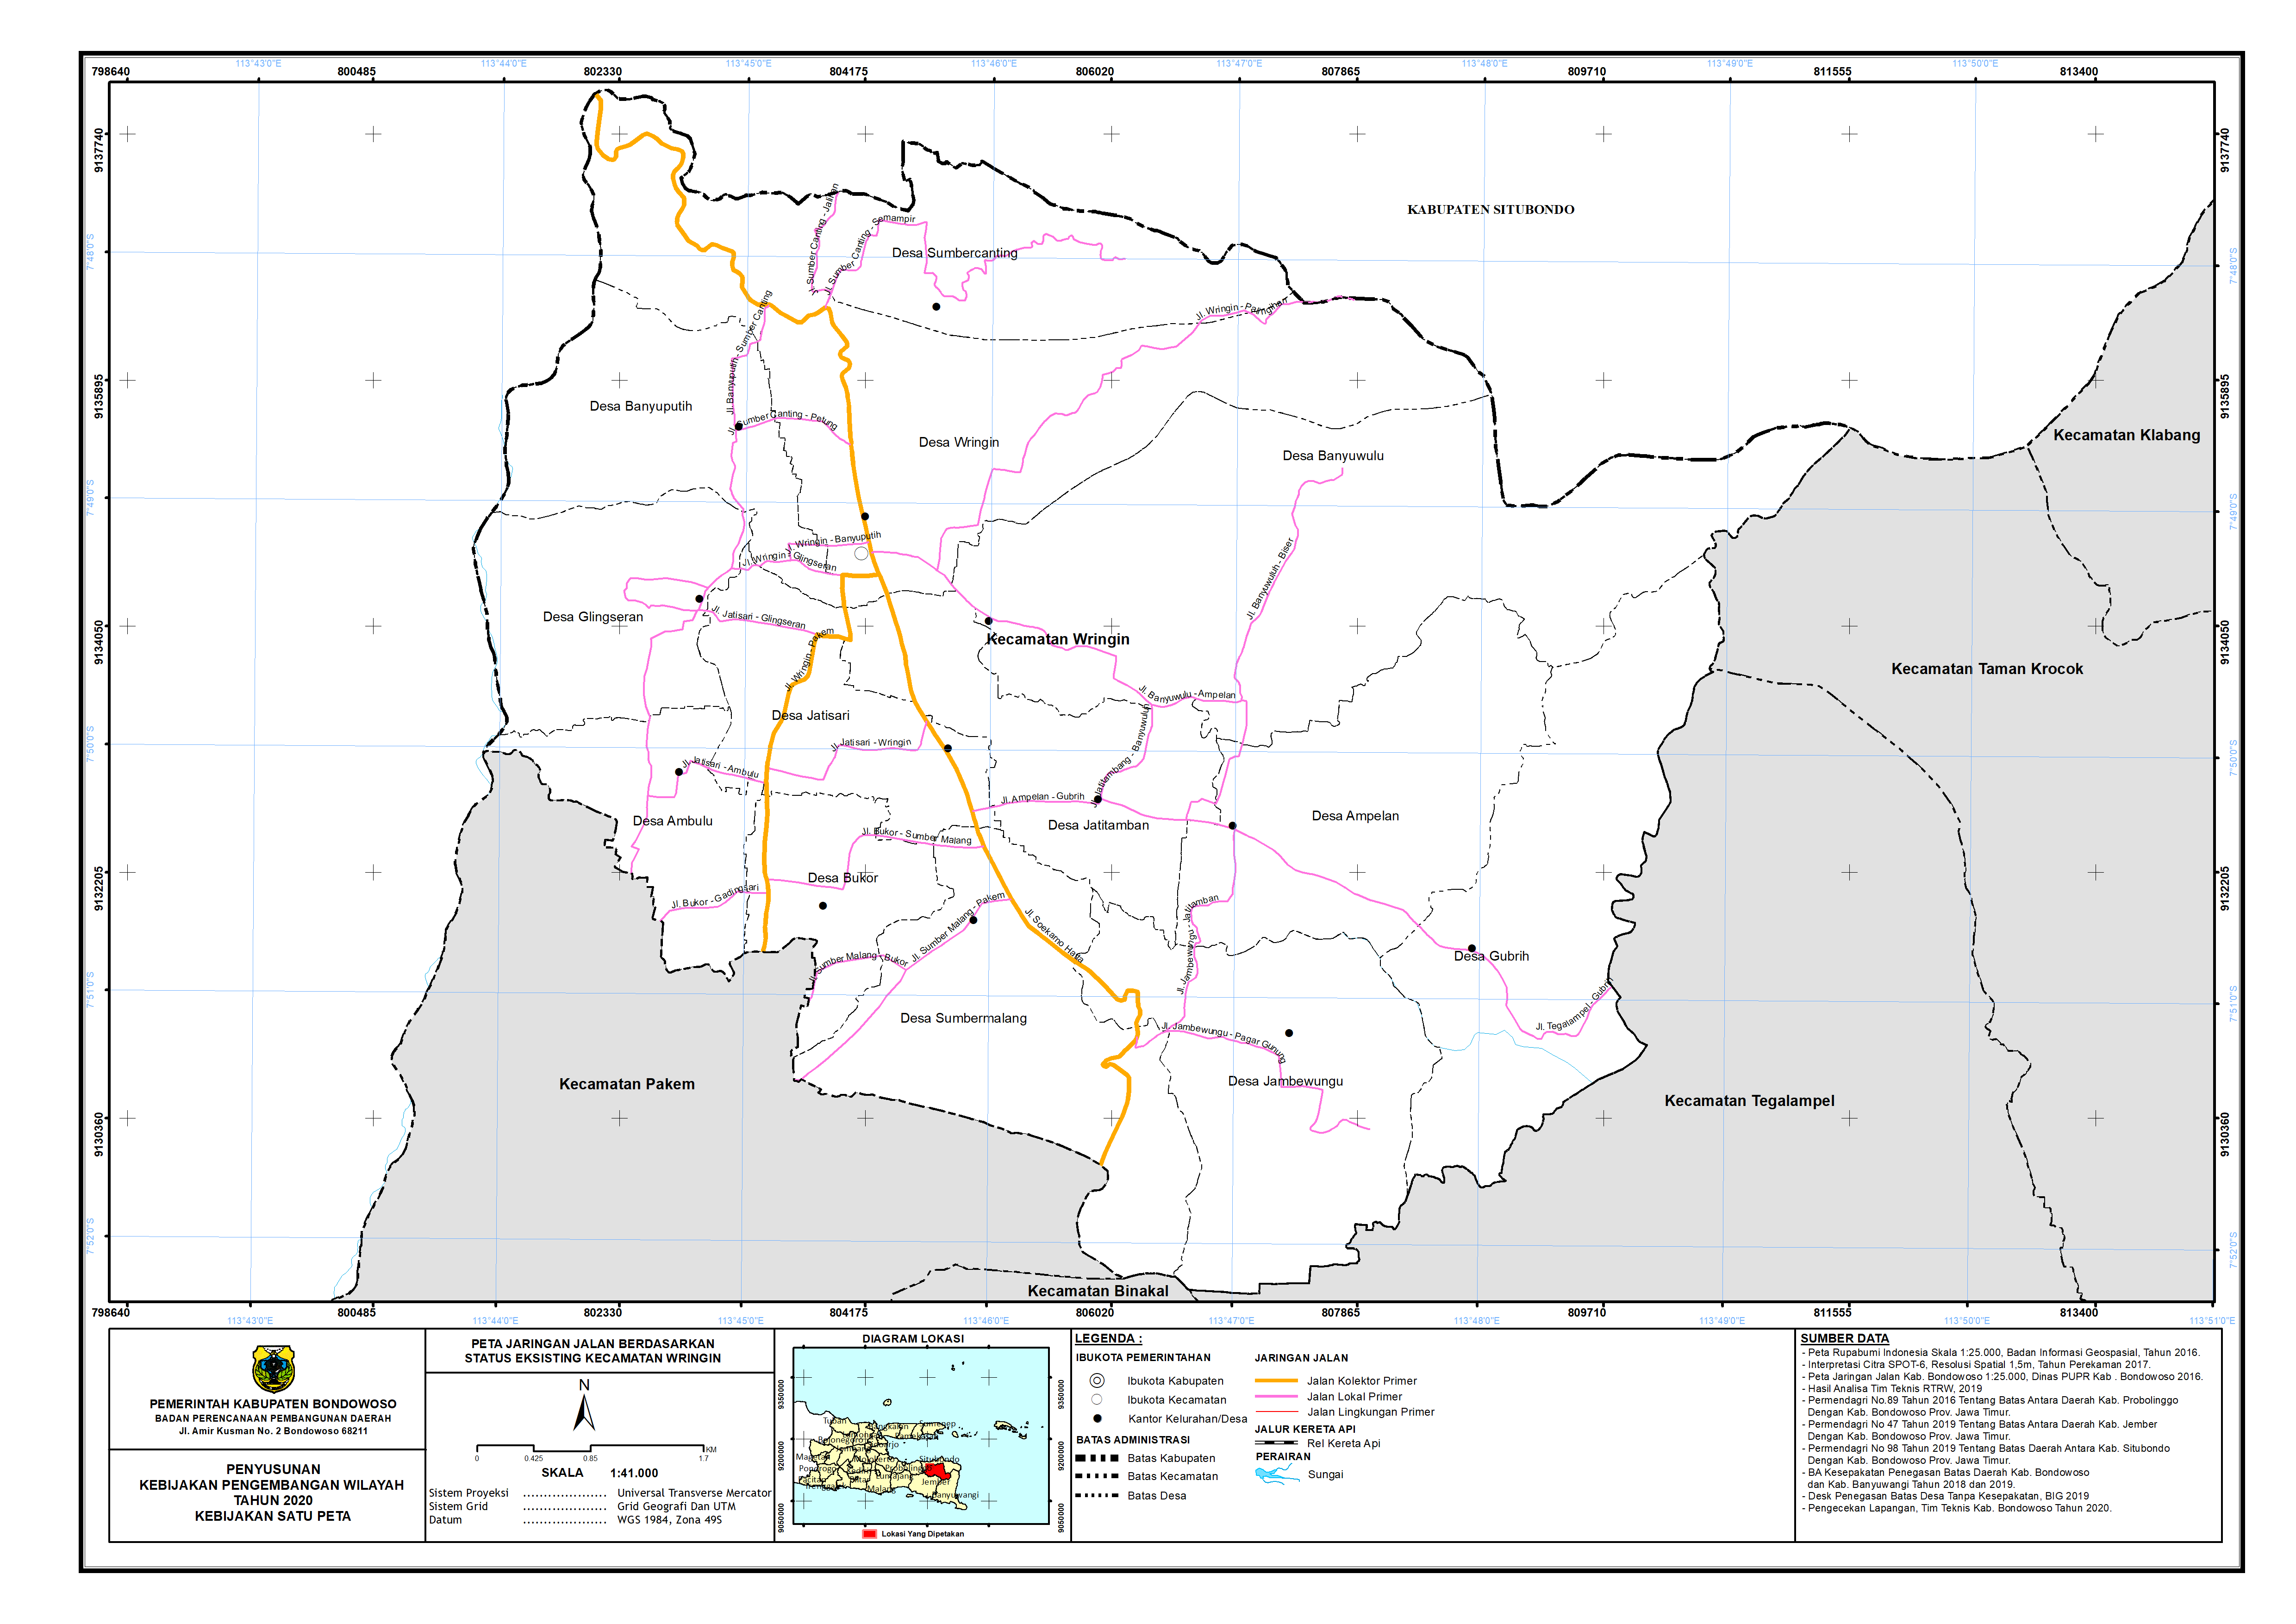 Peta Jaringan Jalan Berdasarkan Status Eksisting Kecamatan Wringin.png